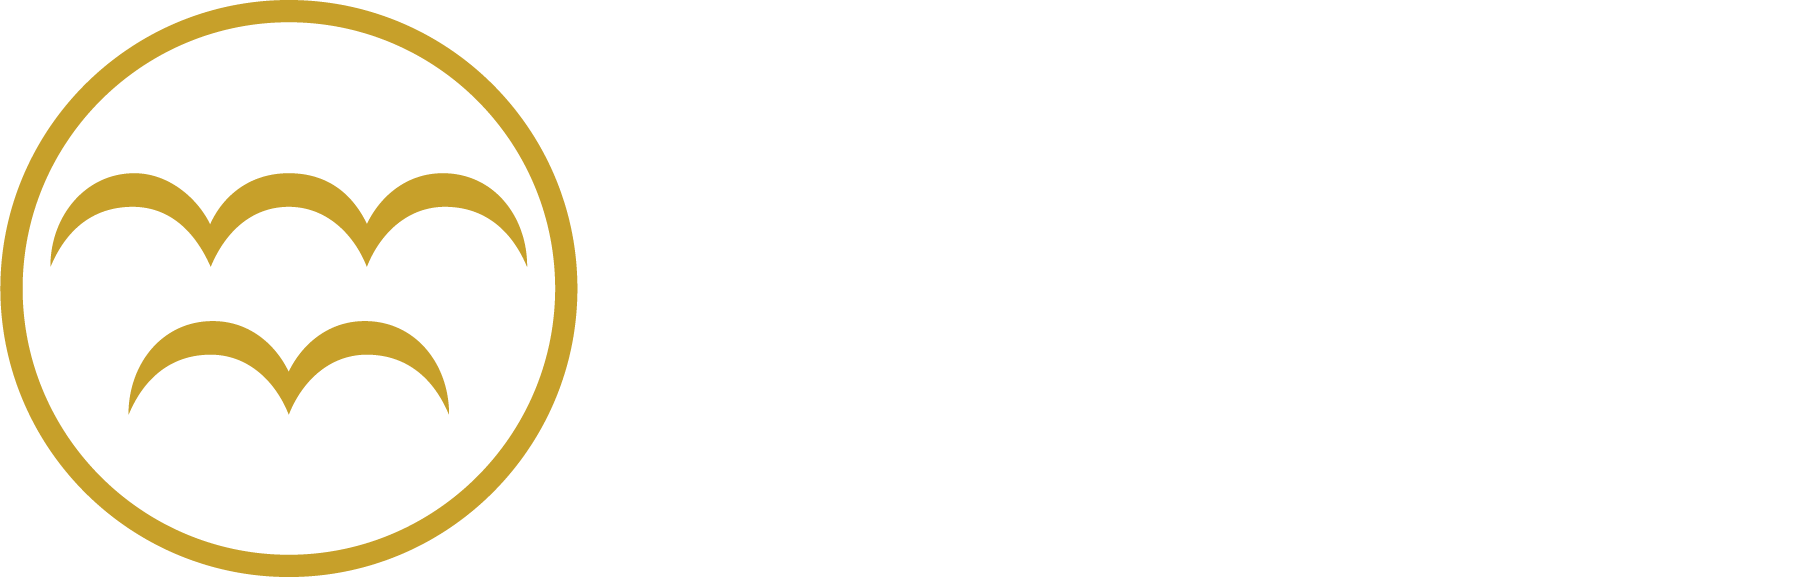  Suomusjärvi Local History Museum